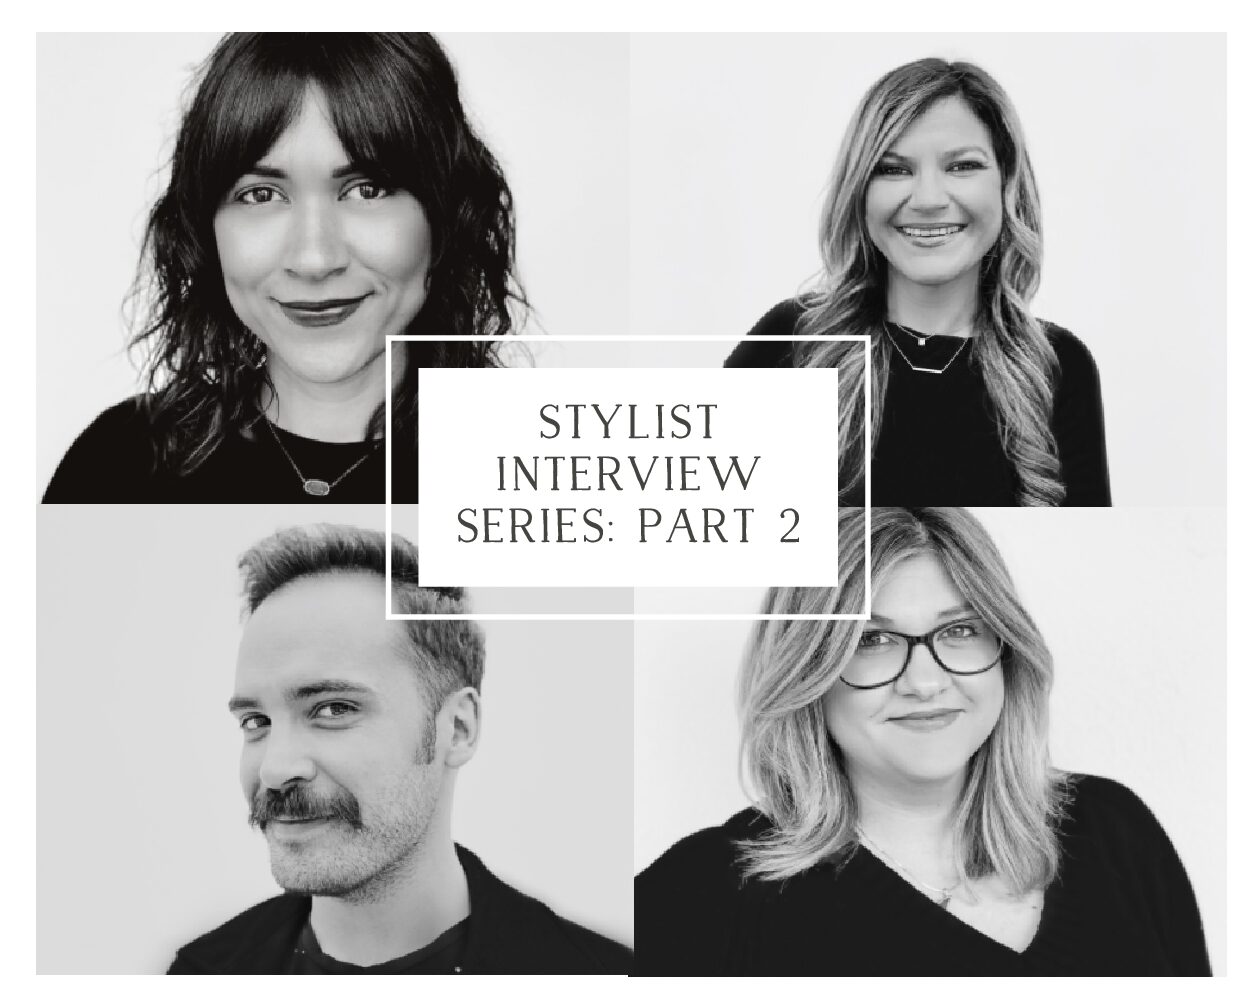 Stylist Interview Series: Part 2 – Meet Adam, Jeannine, Shanna, and Rachel